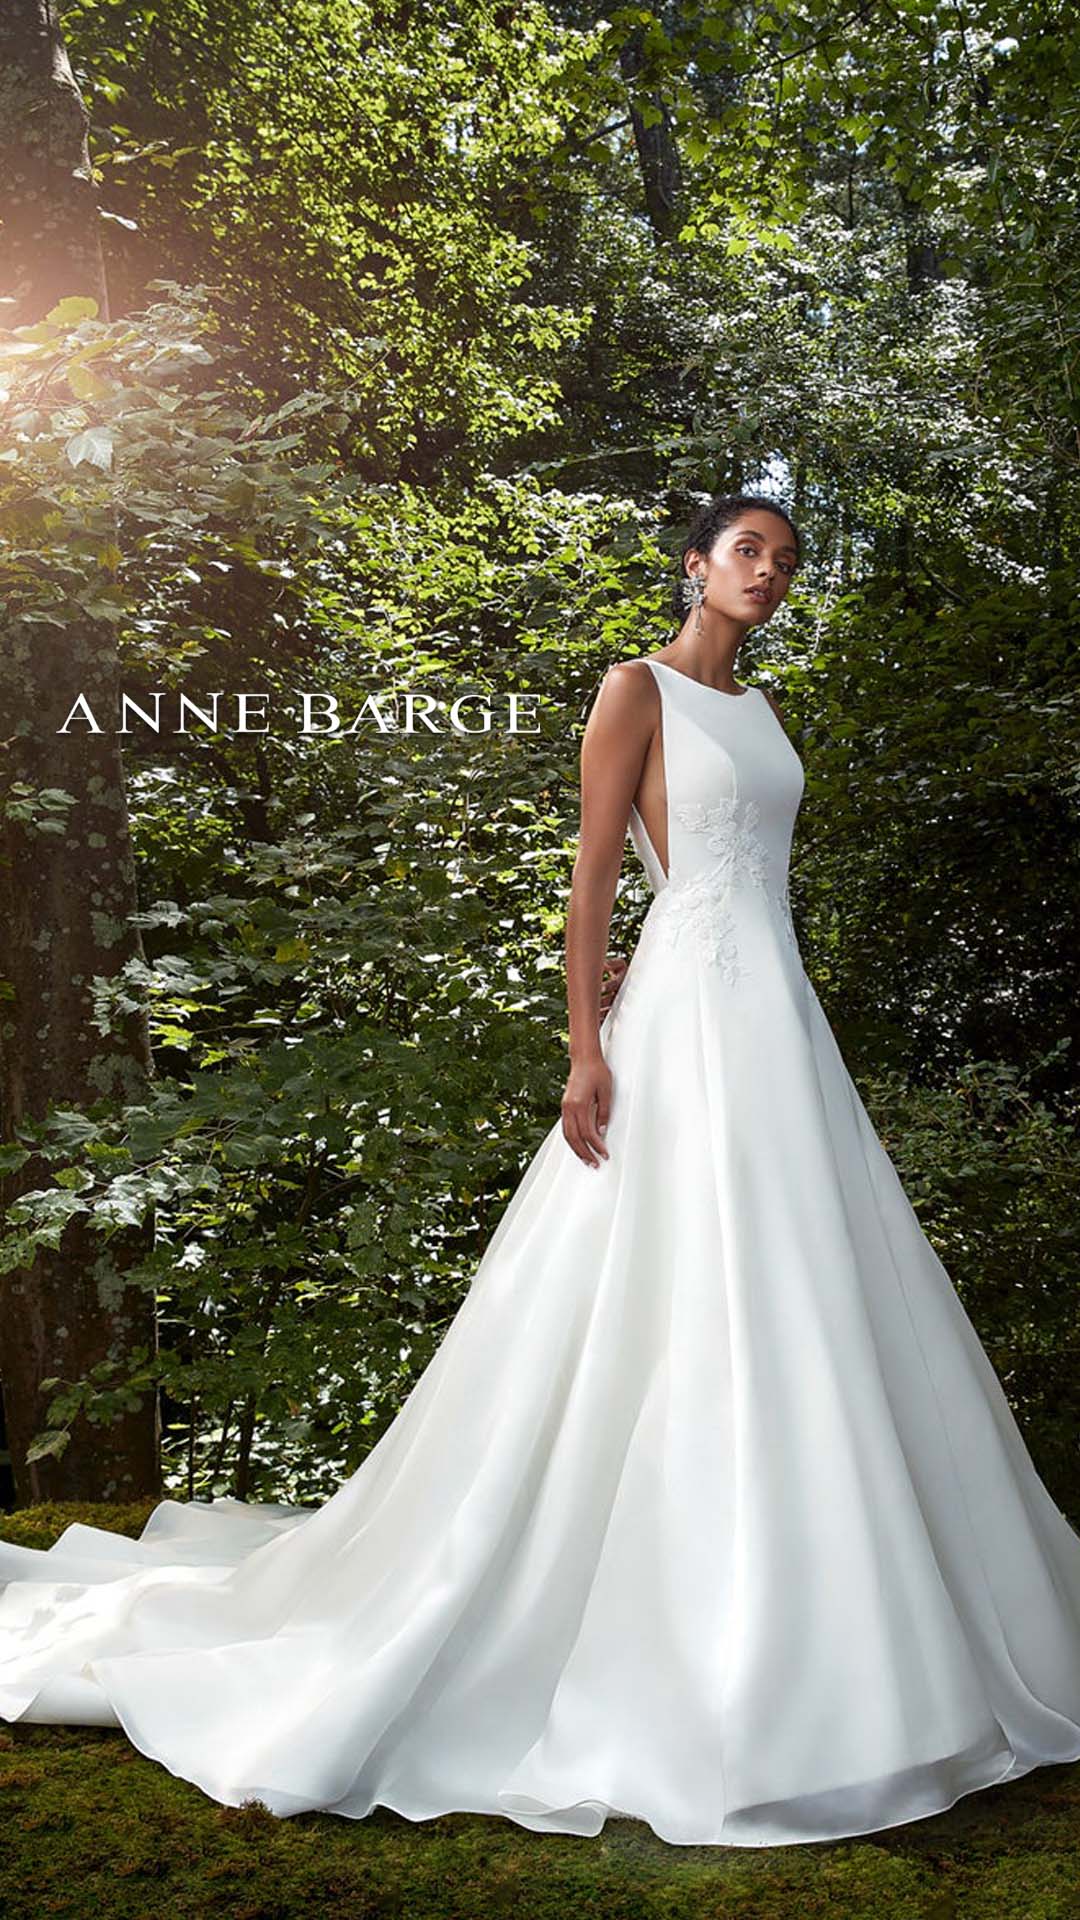 Anne Barge SC Designer Wedding Dress